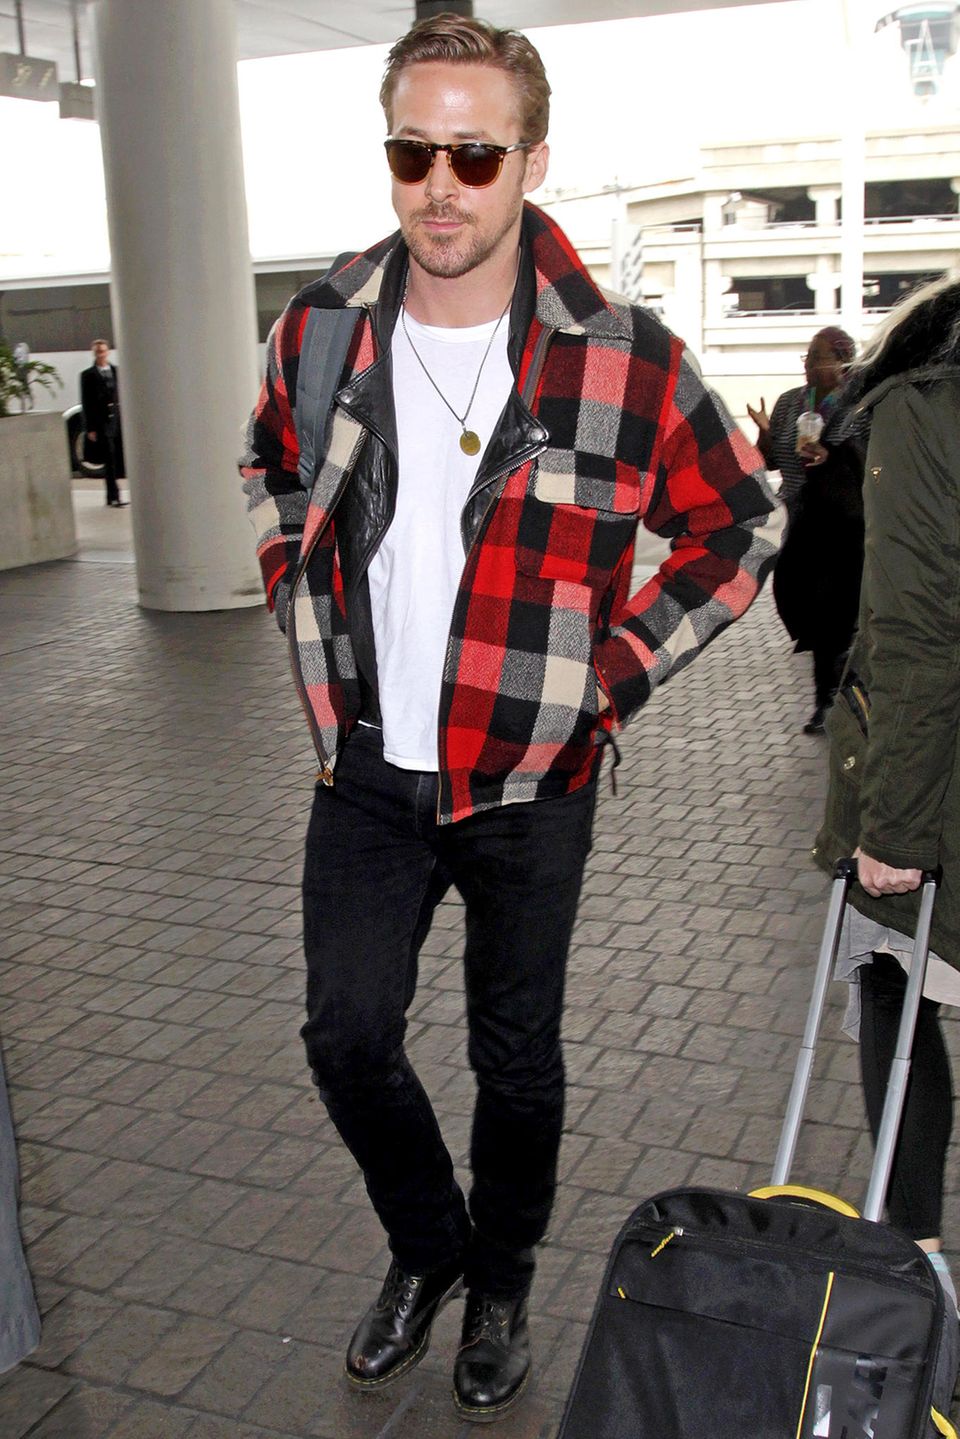 Rocker? Baumfäller? Auf jeden Fall hot! Ryan Gosling kombiniert sein schwarz-weißes Rockeroutfit und Lederjacke mit der karierten Wolljacke.